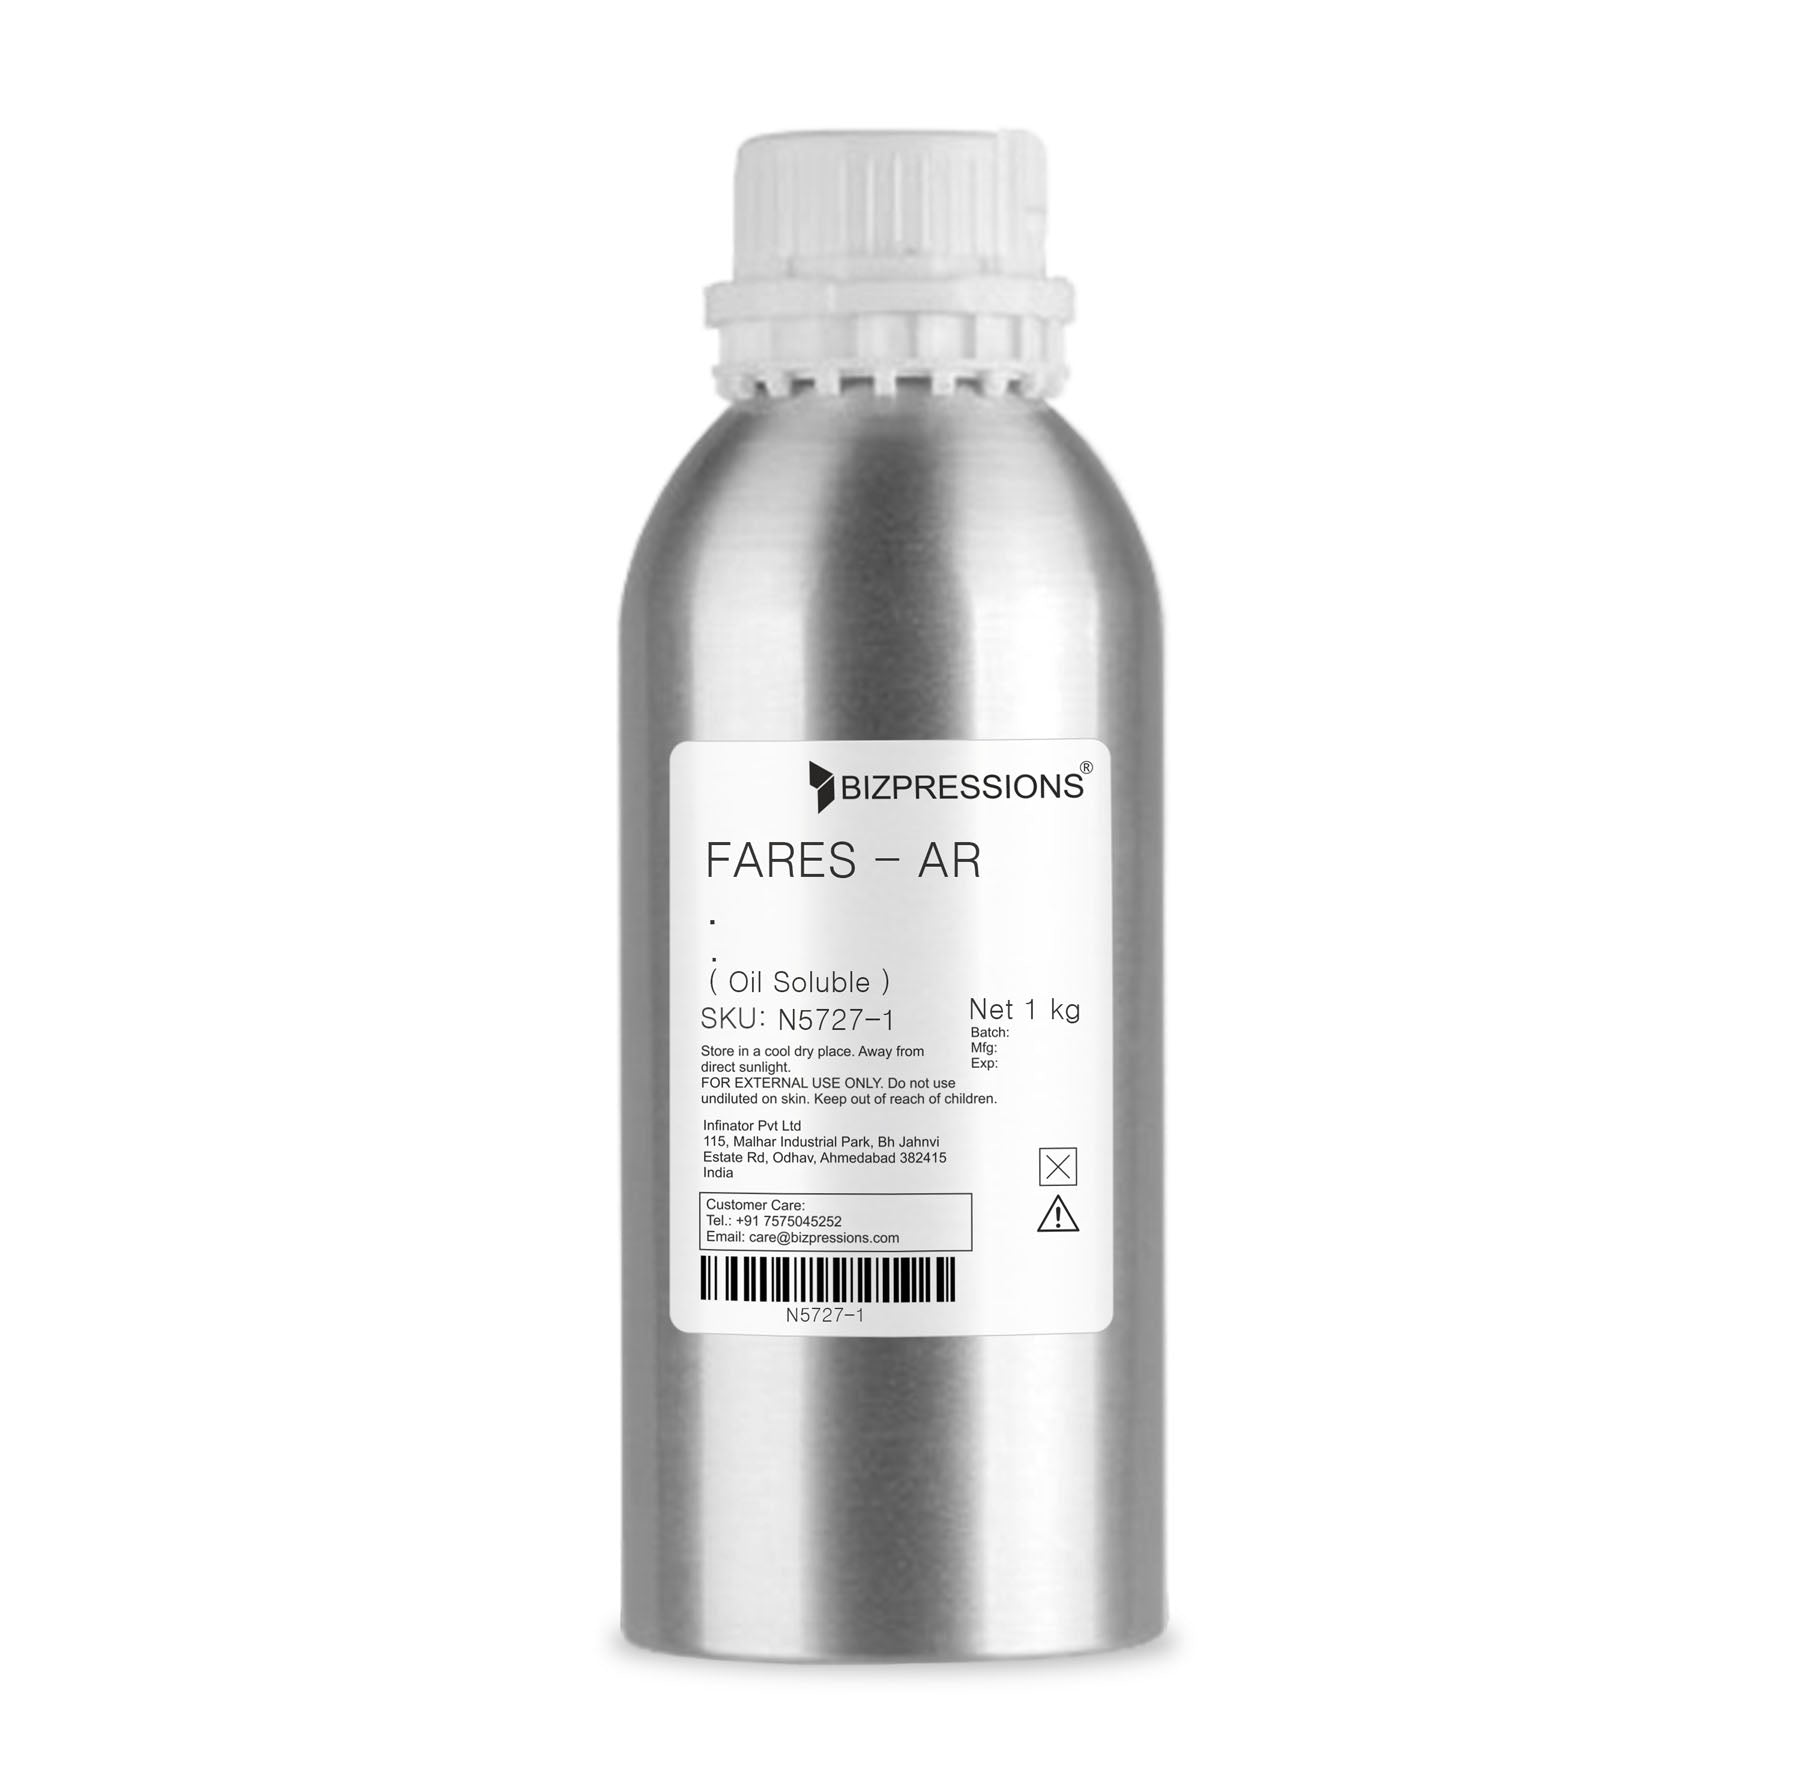 FARES - AR - Fragrance ( Oil Soluble ) - 1 kg